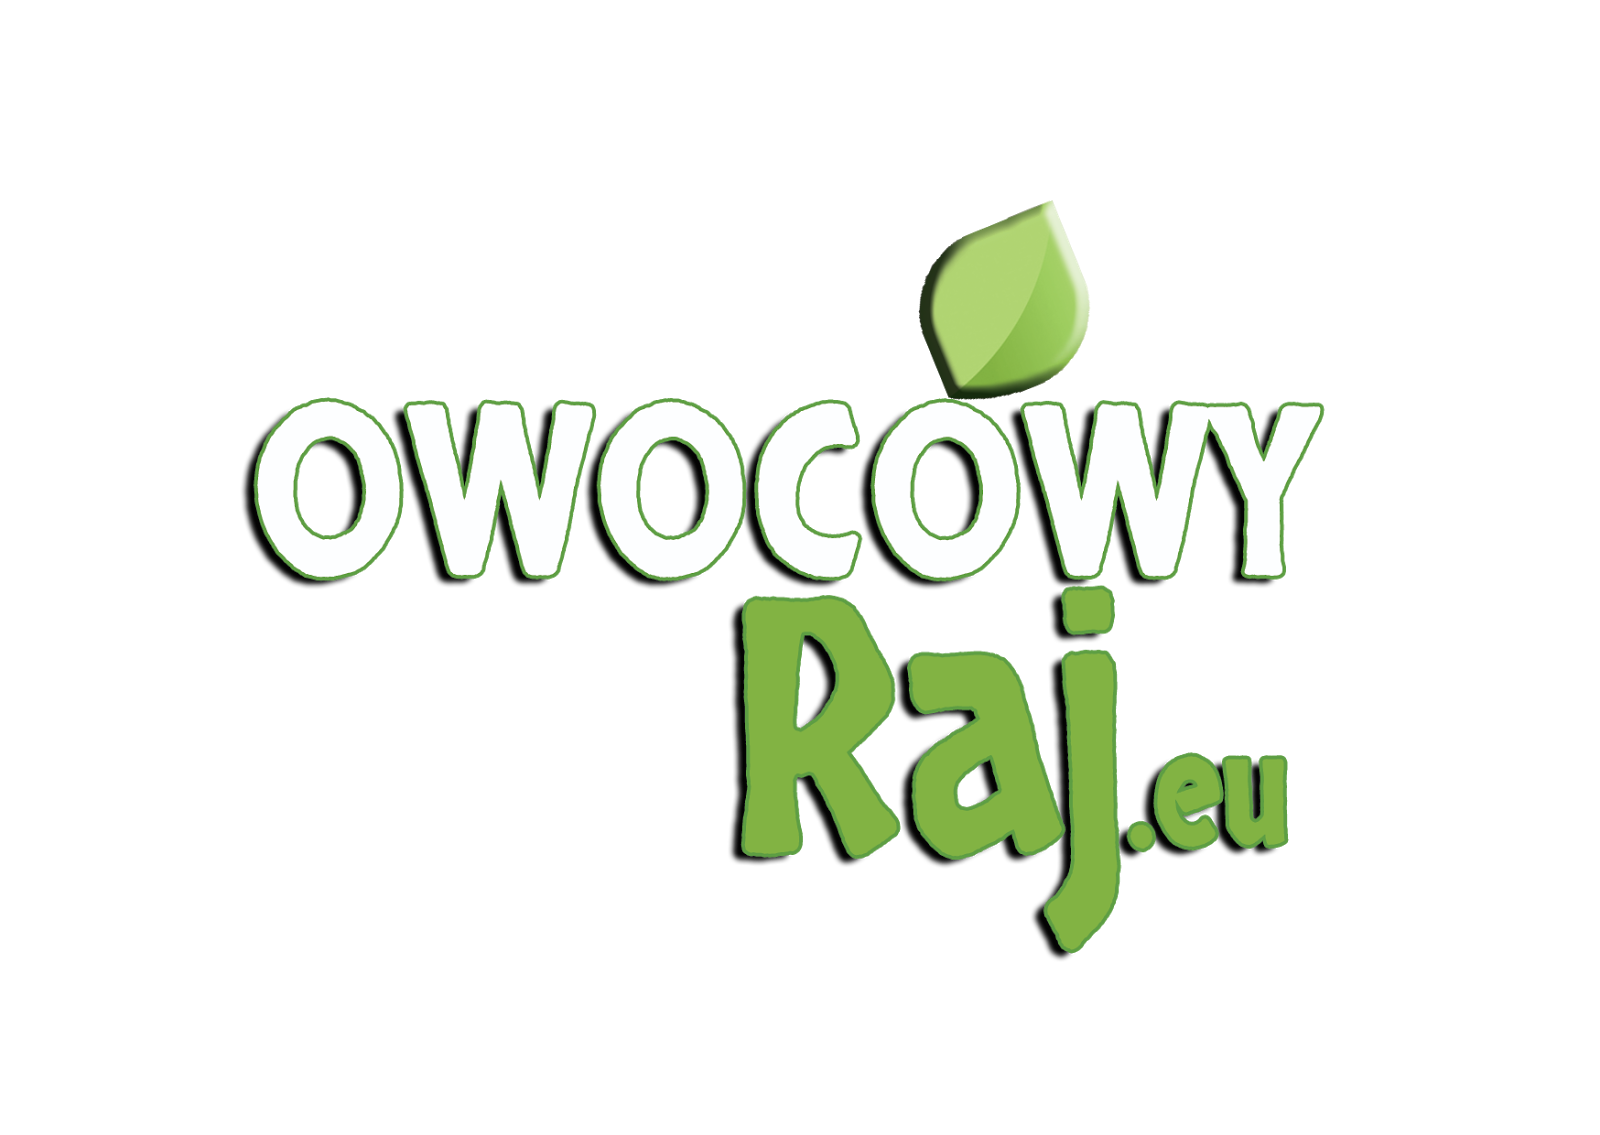 www.owocowyraj.eu?code=FOODMANIA10